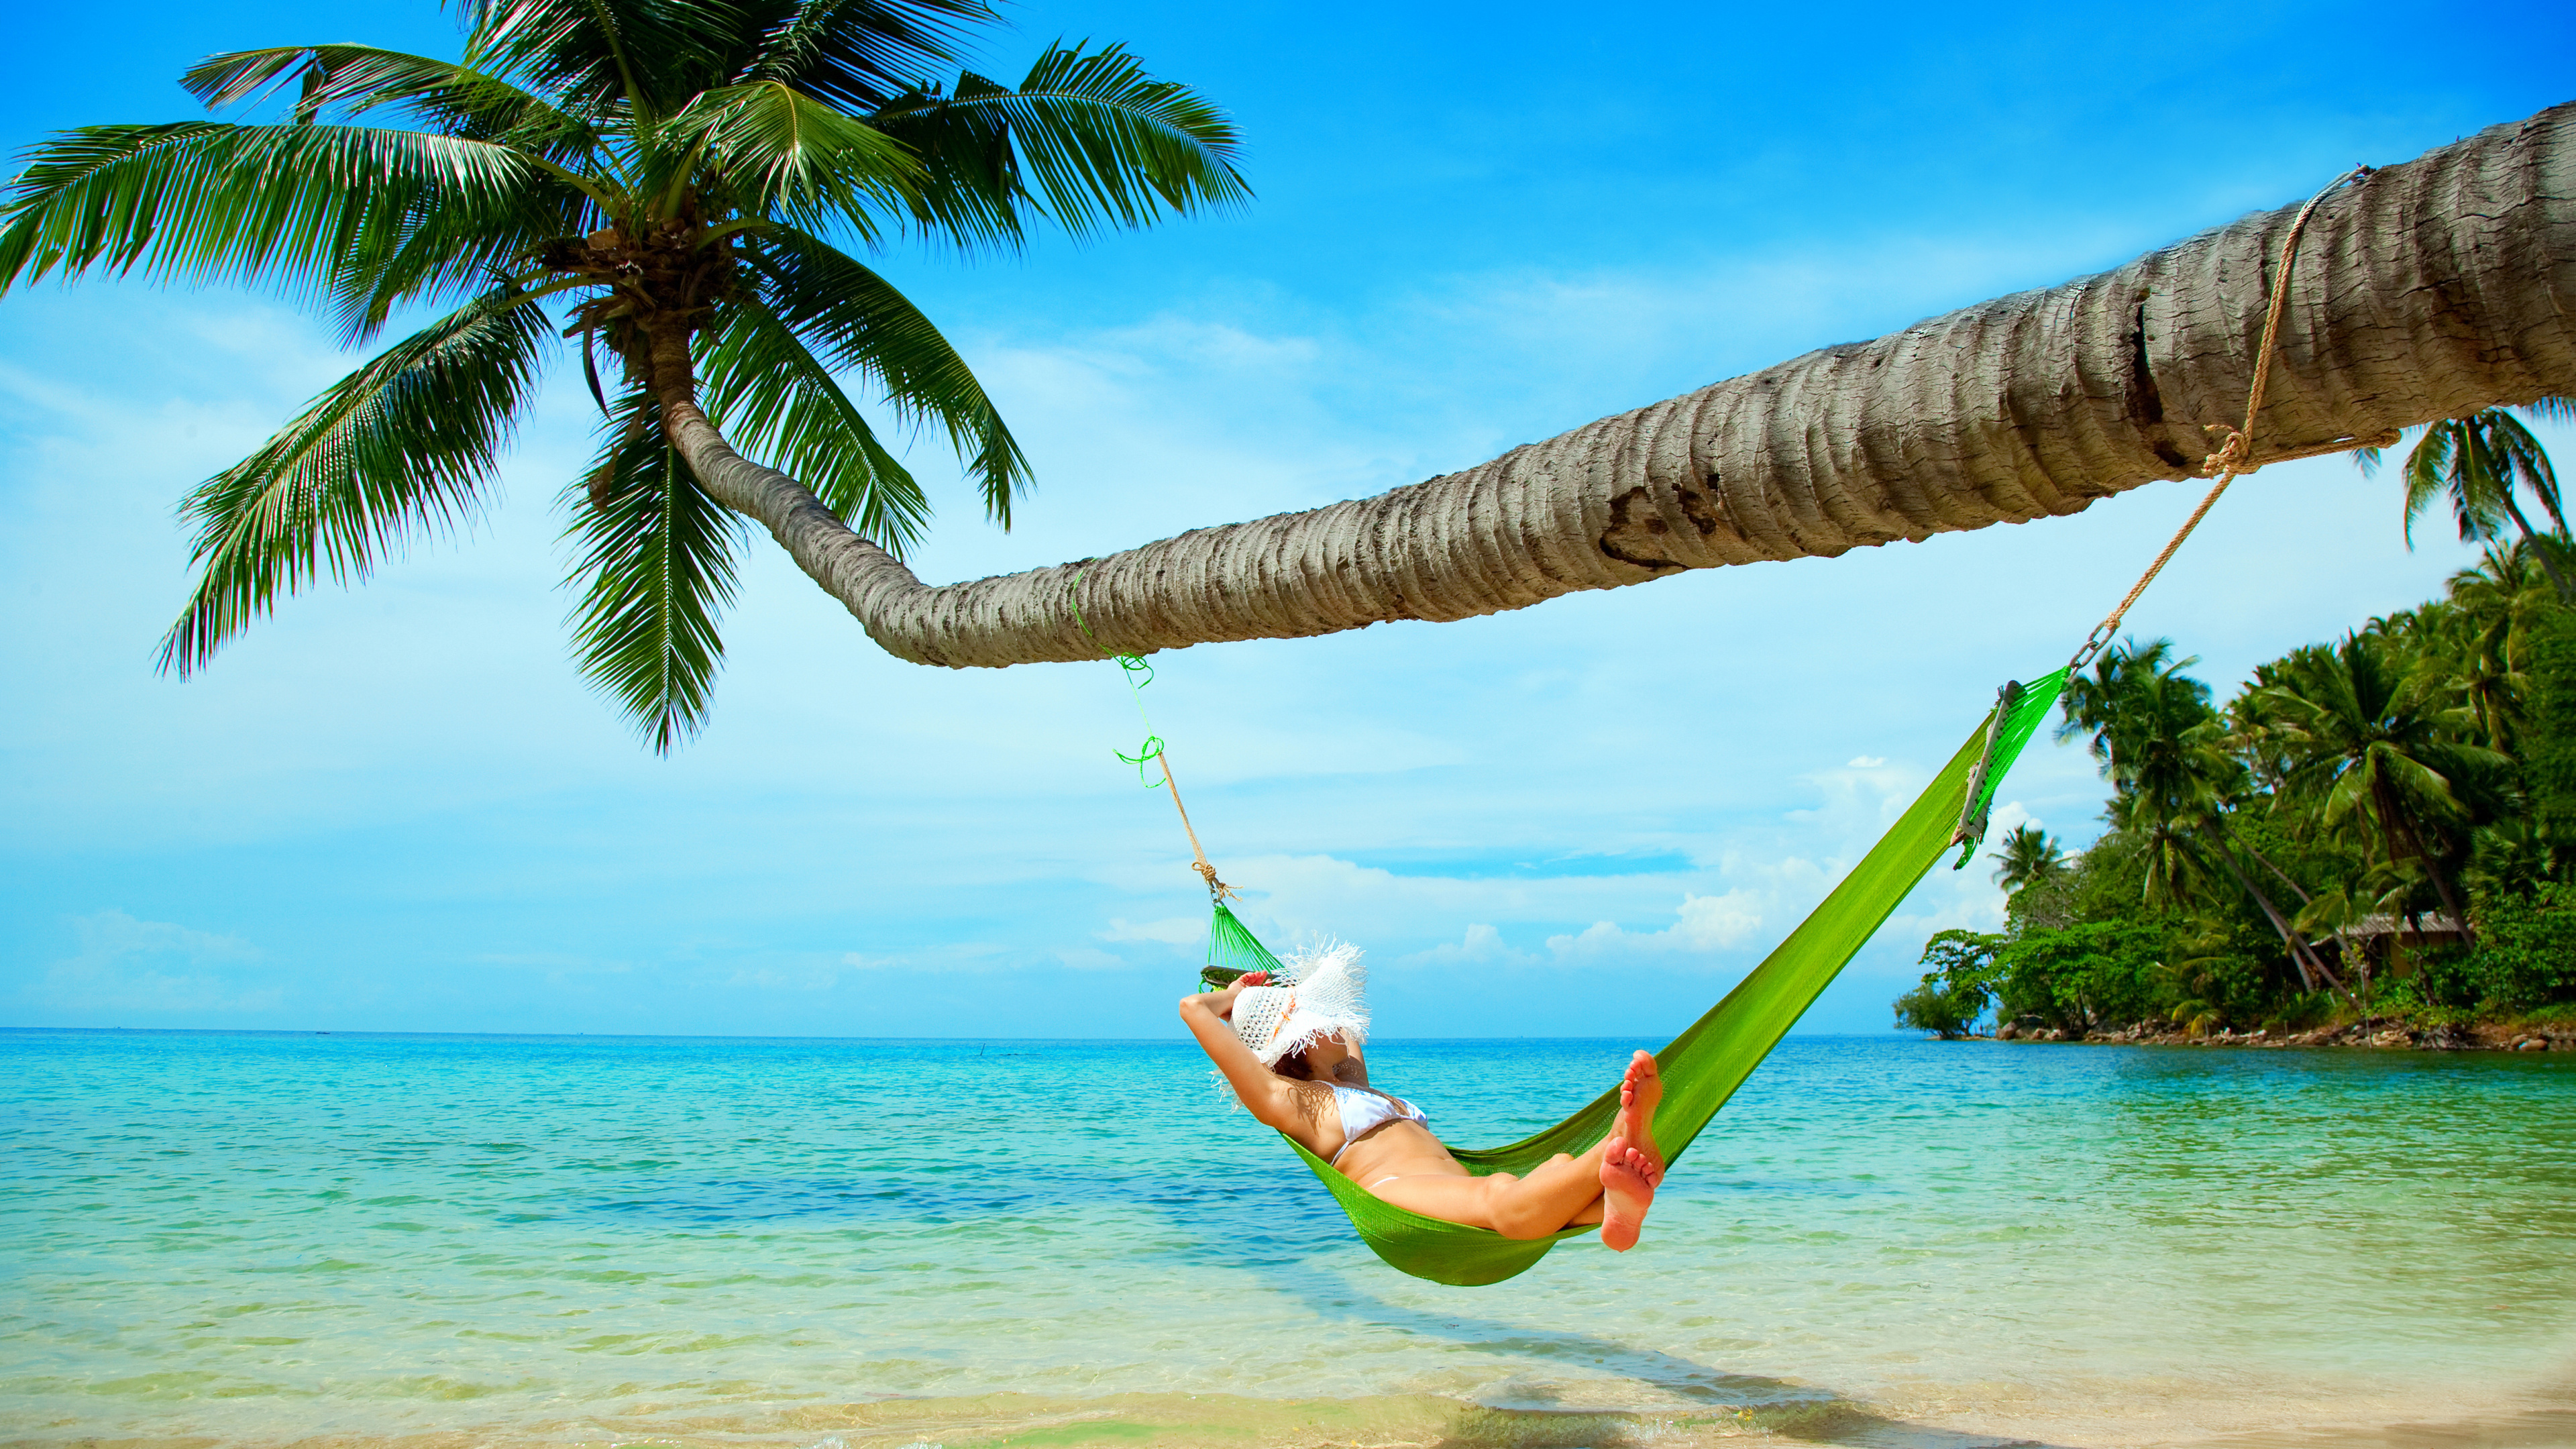 吊床, 大海, 热带地区, 度假, 加勒比 壁纸 3840x2160 允许